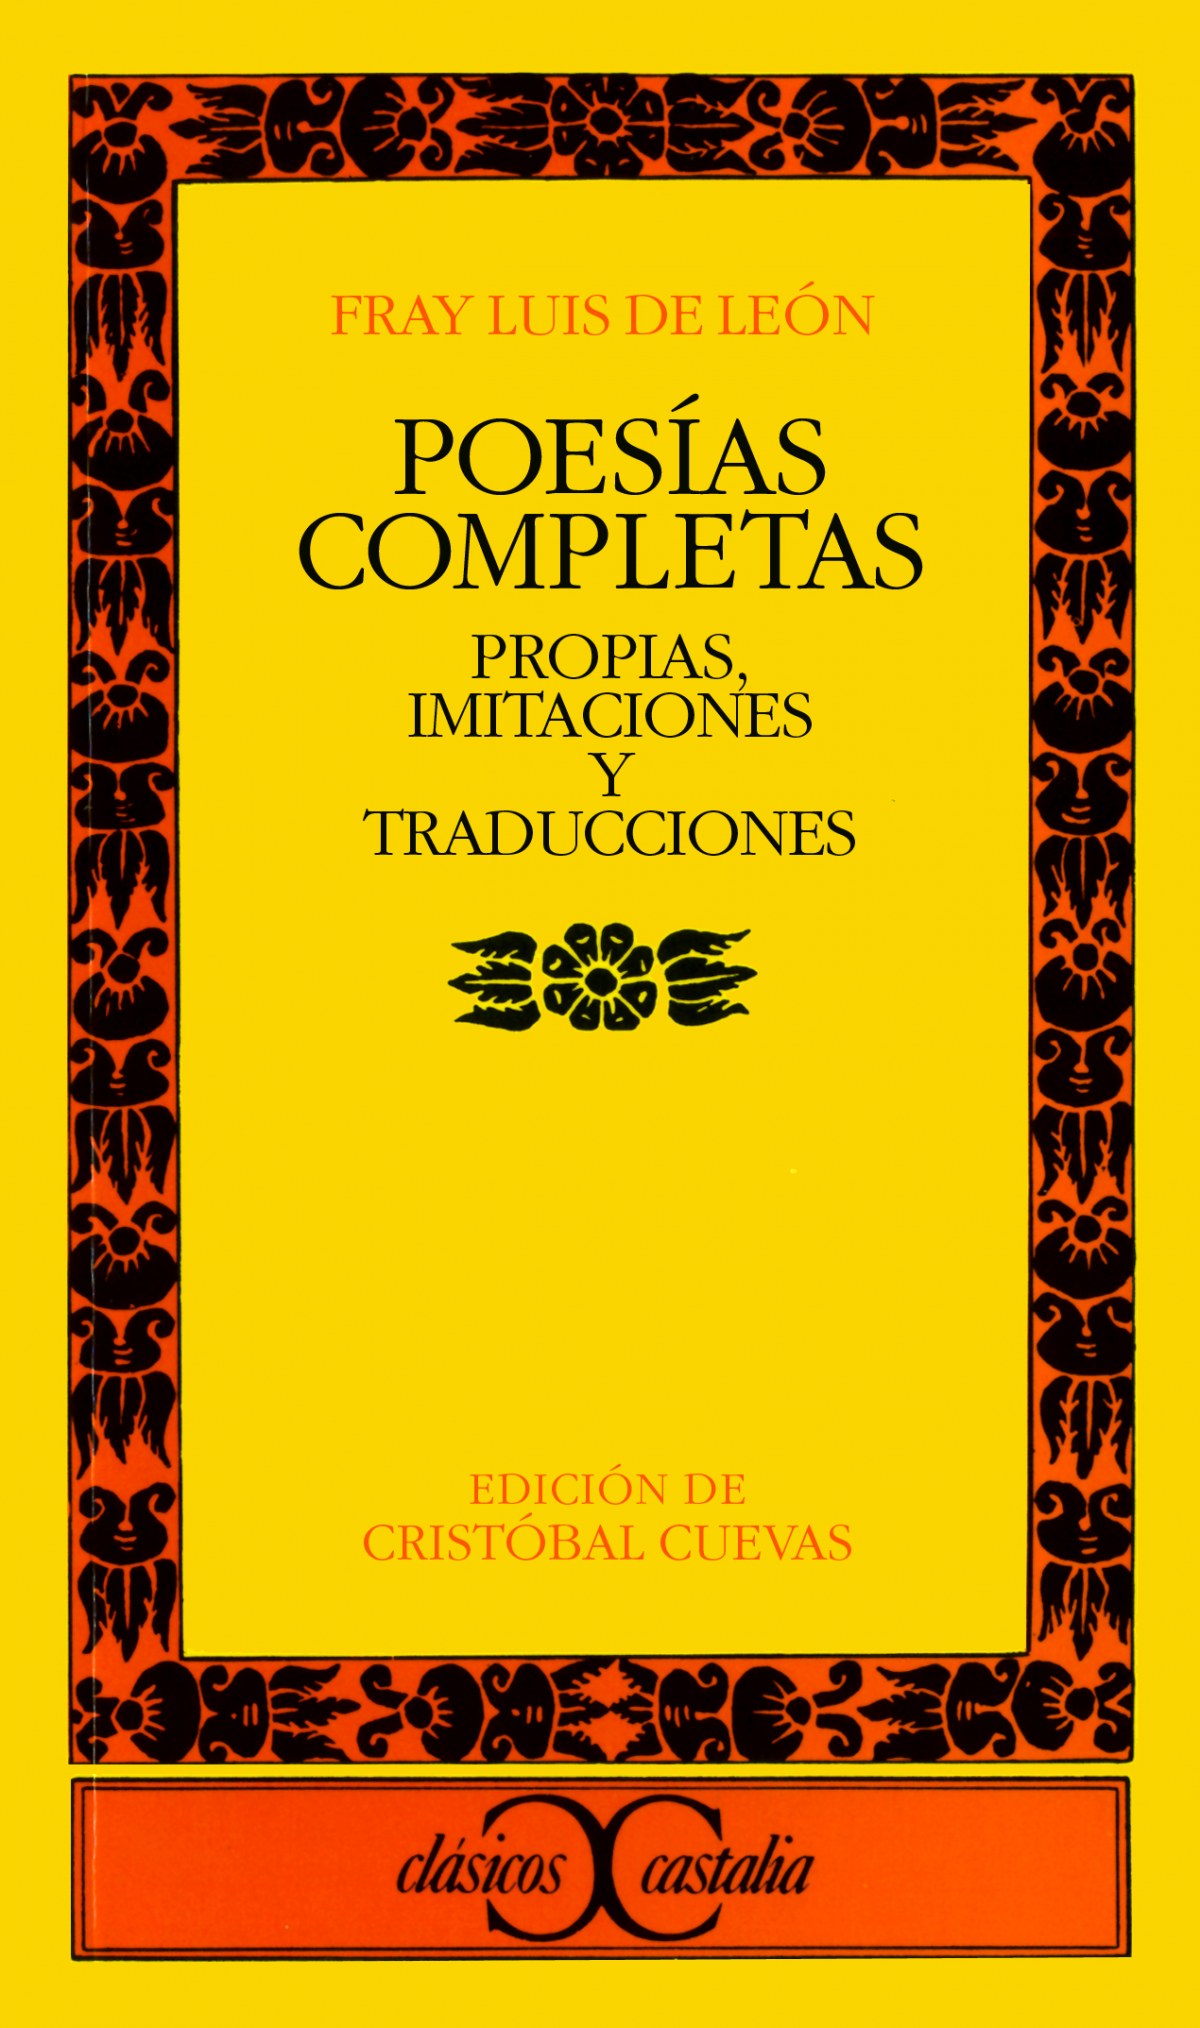 Poesías completas propias, imitaciones y traducciones - Fray Luis De León